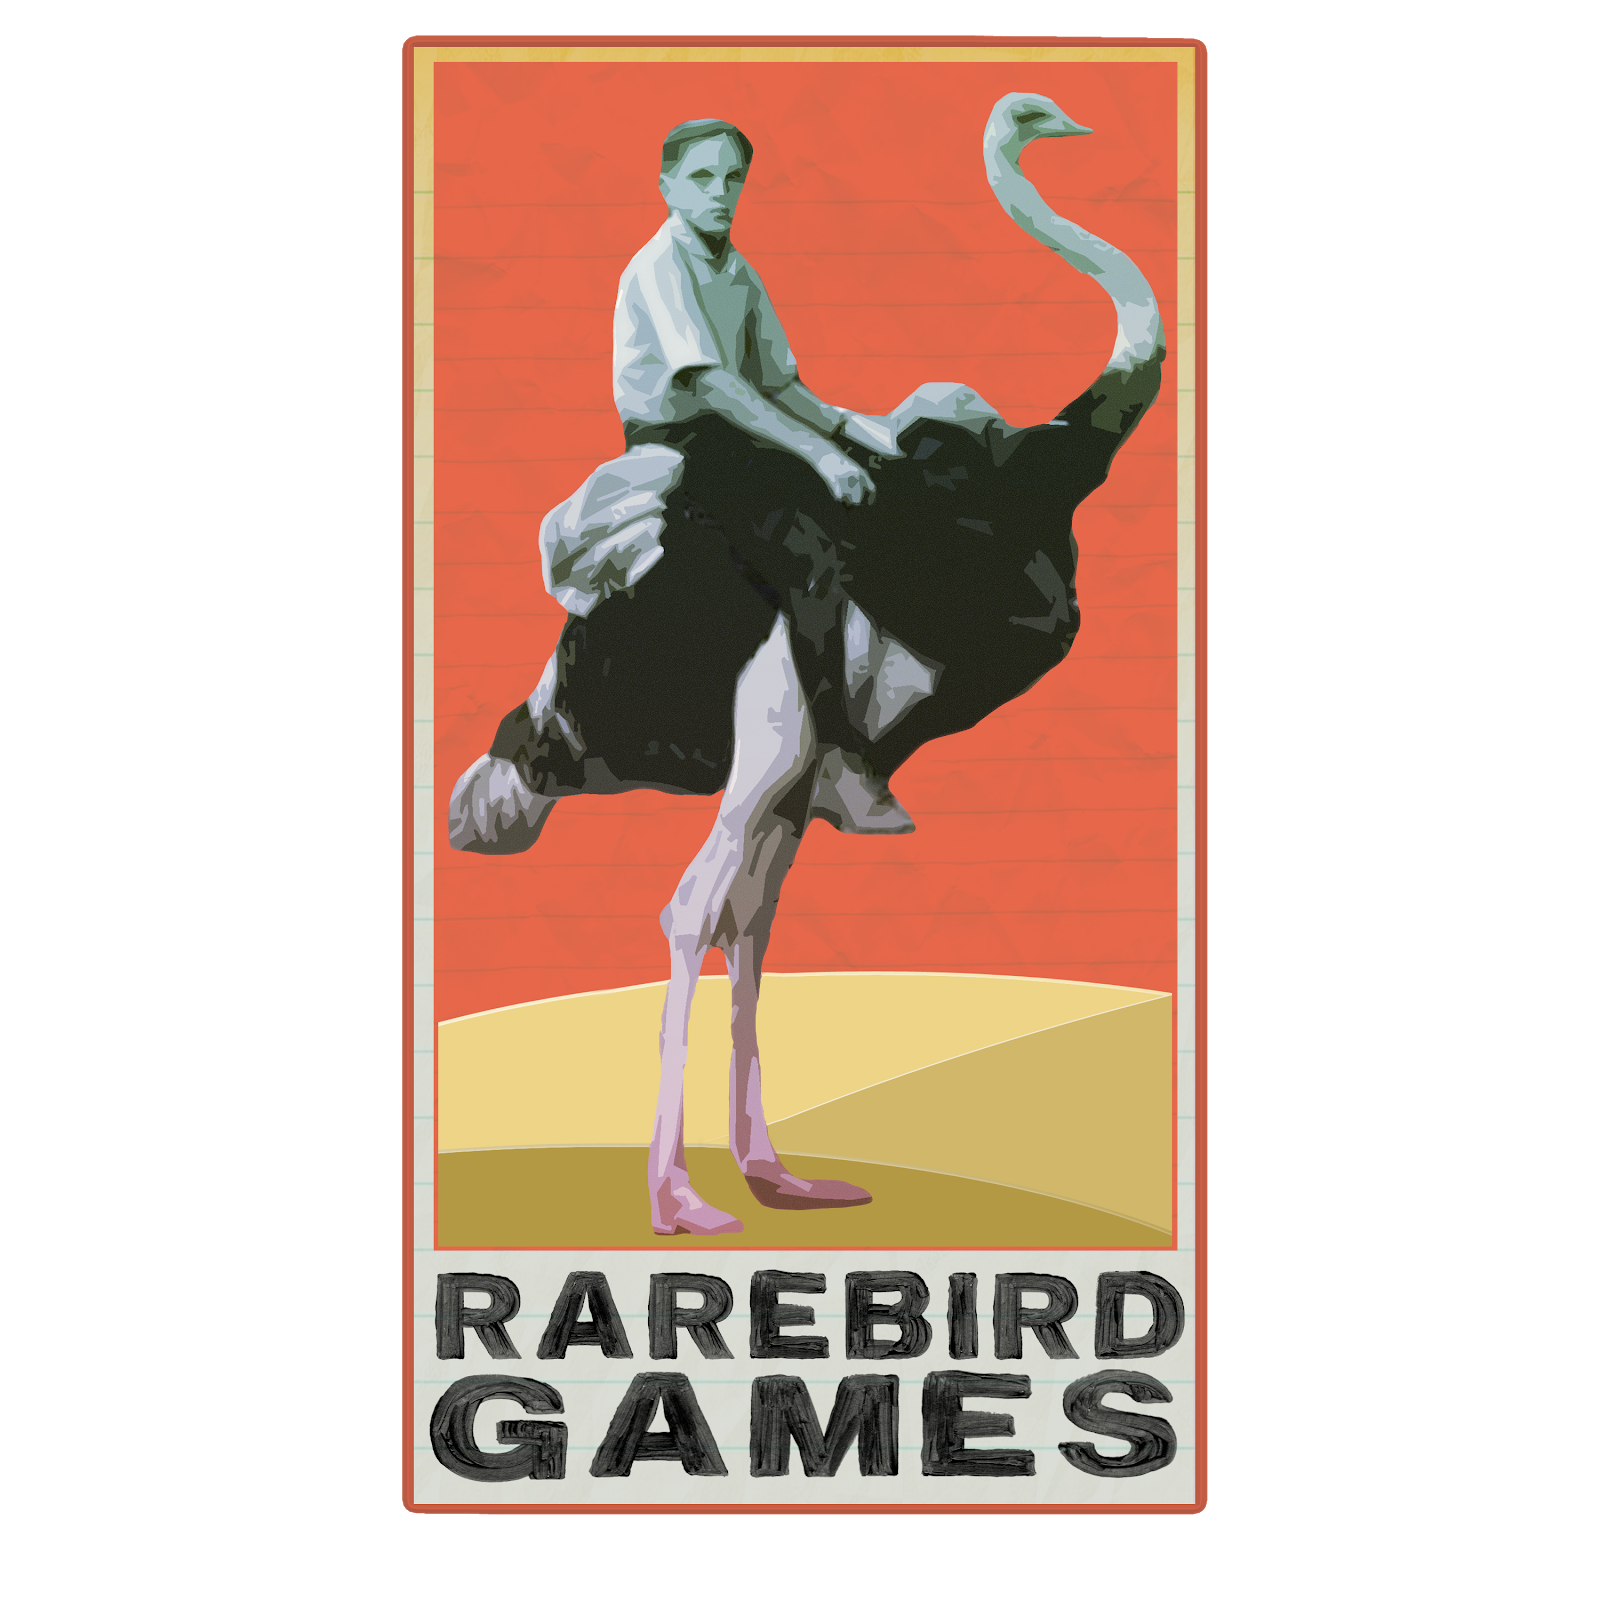 RareBird Games